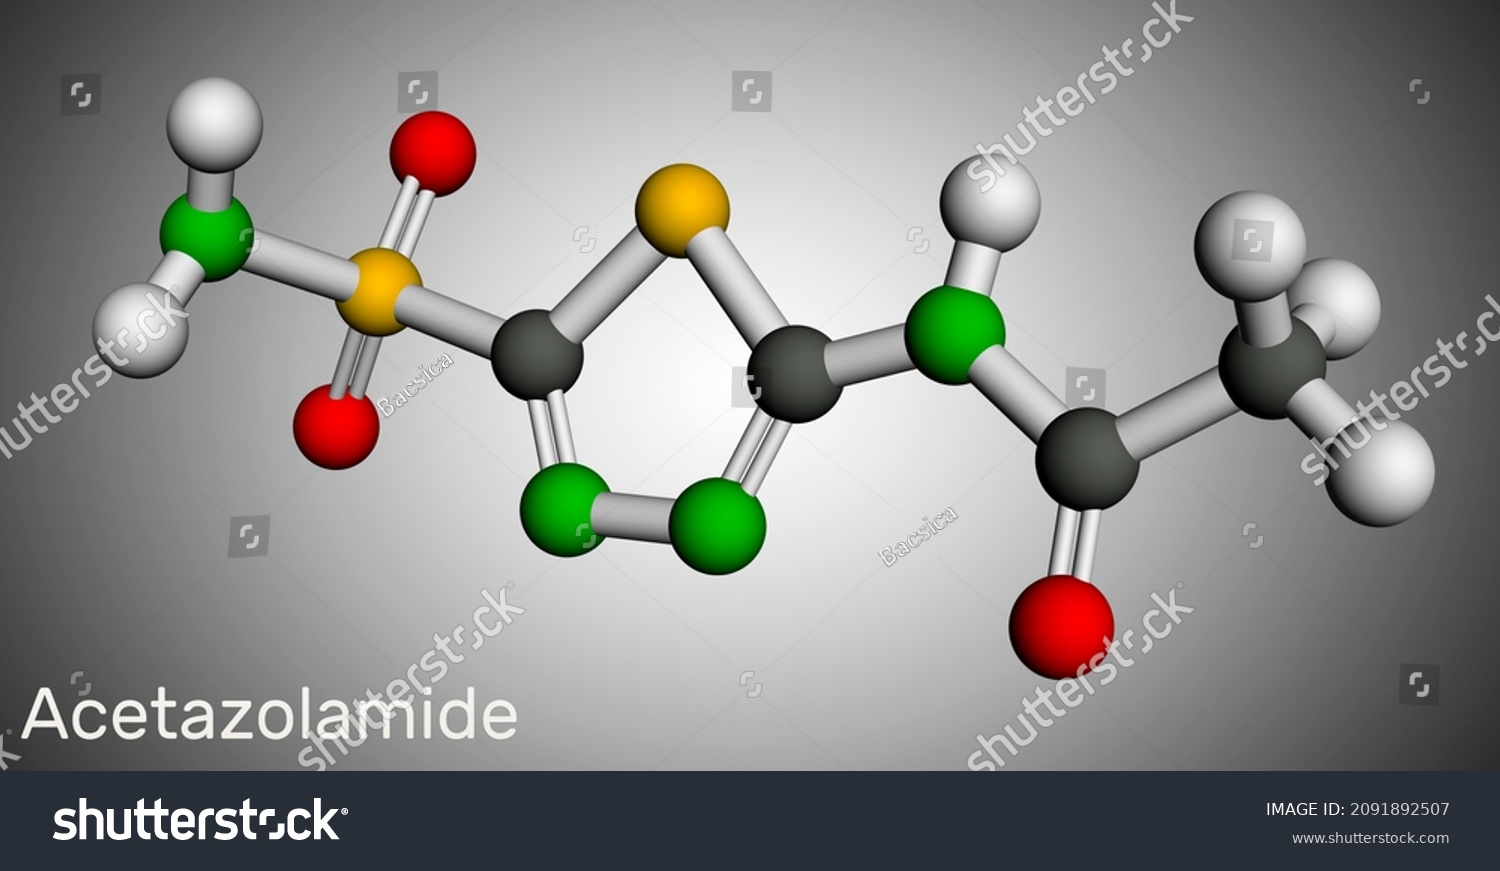 acetazolamide structure